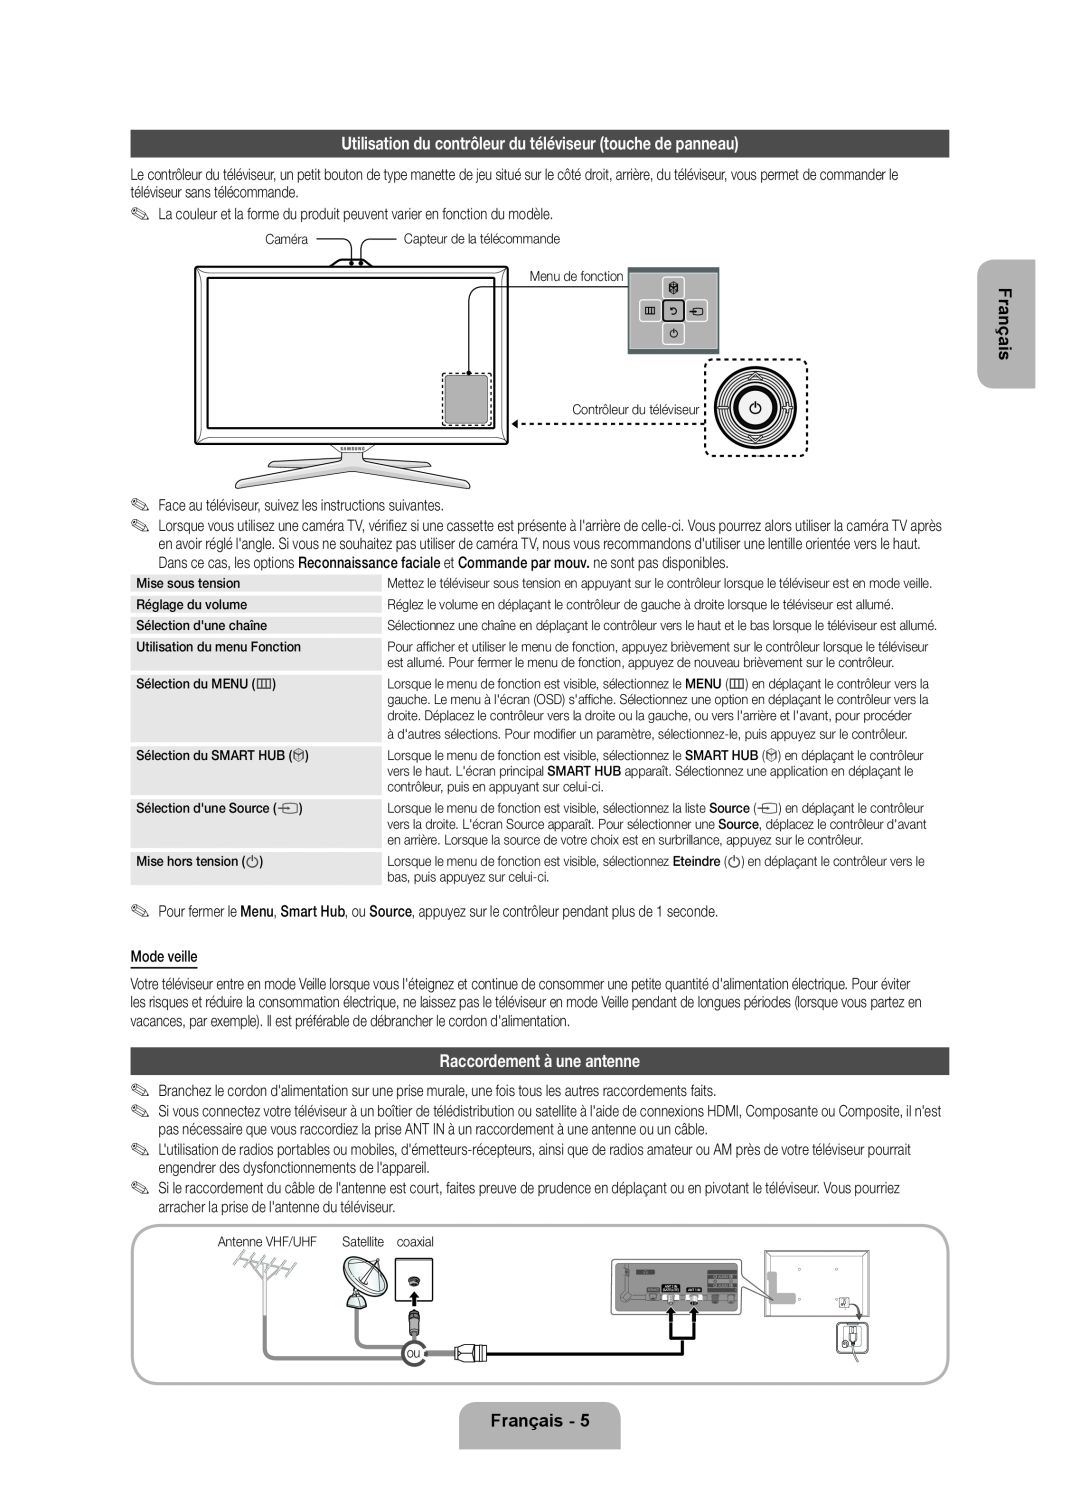 Samsung UE40ES7000SXXH Utilisation du contrôleur du téléviseur touche de panneau, Raccordement à une antenne, Français 